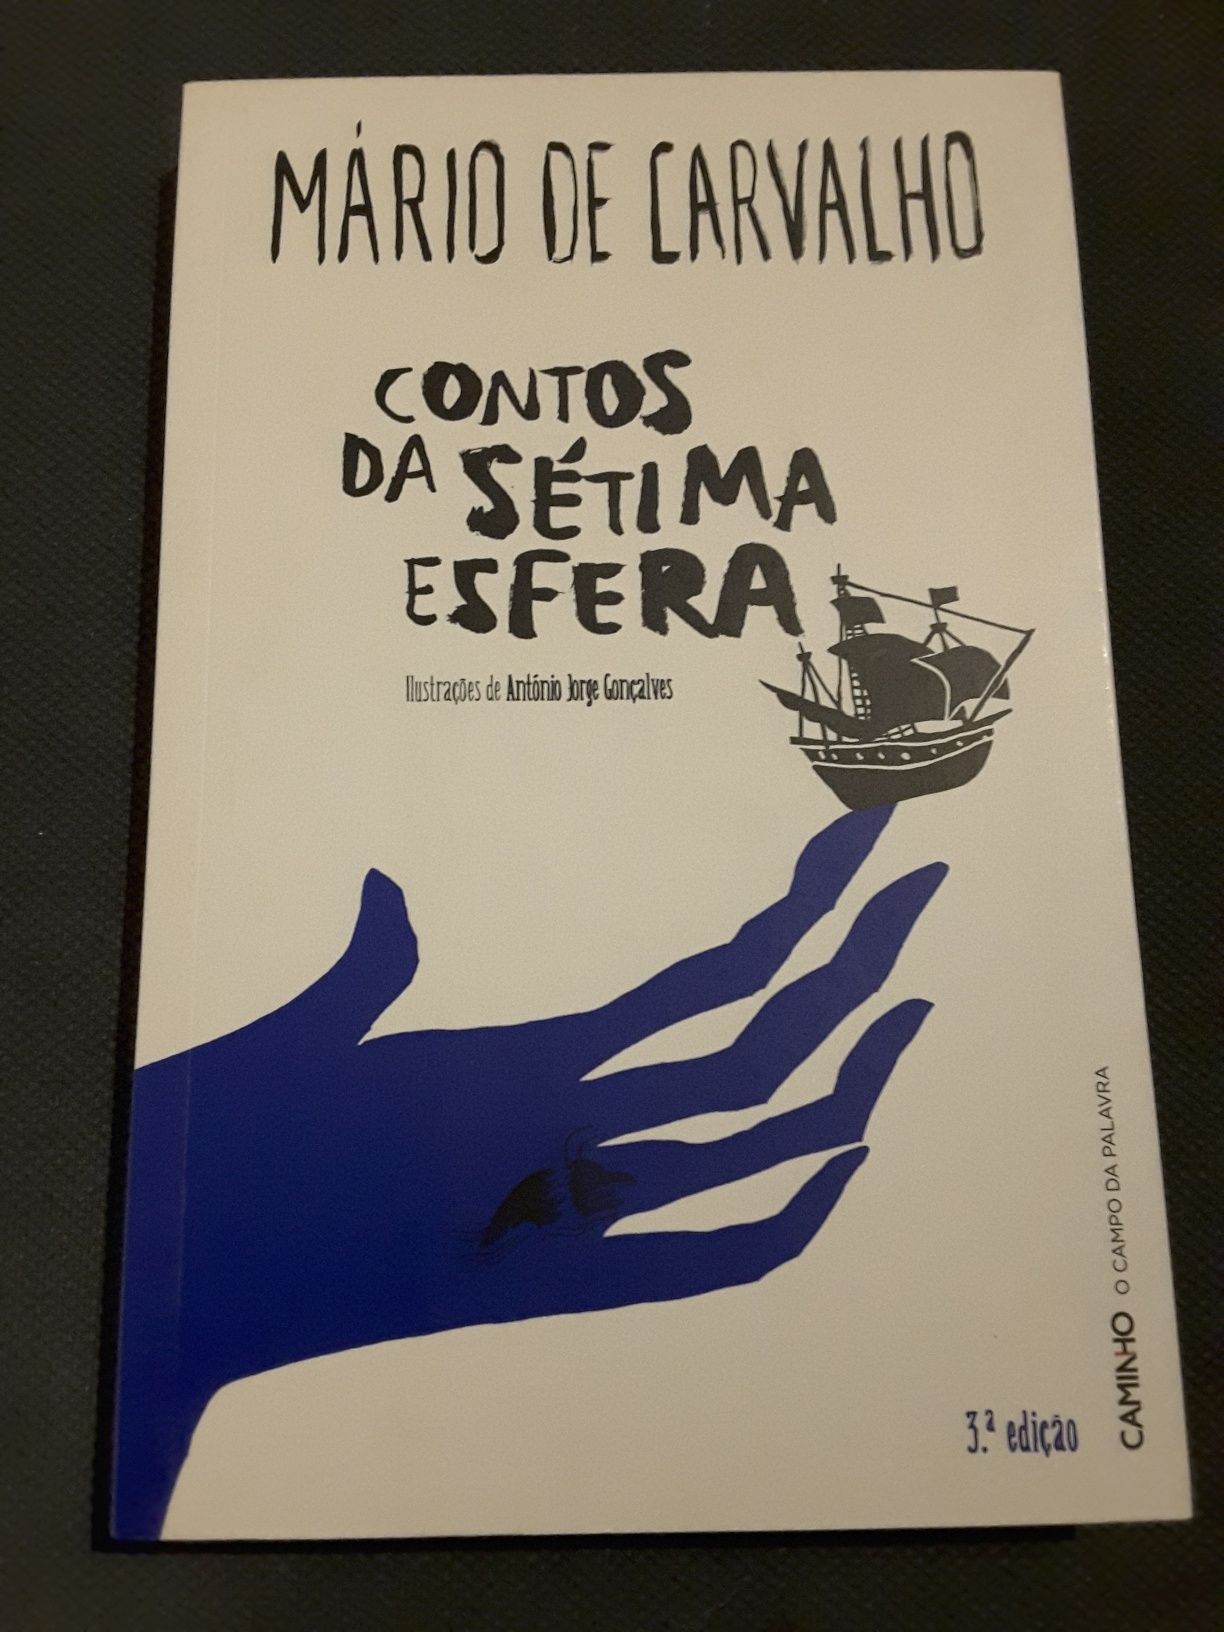 Obras de Mega Ferreira / Obras de Mário de Carvalho